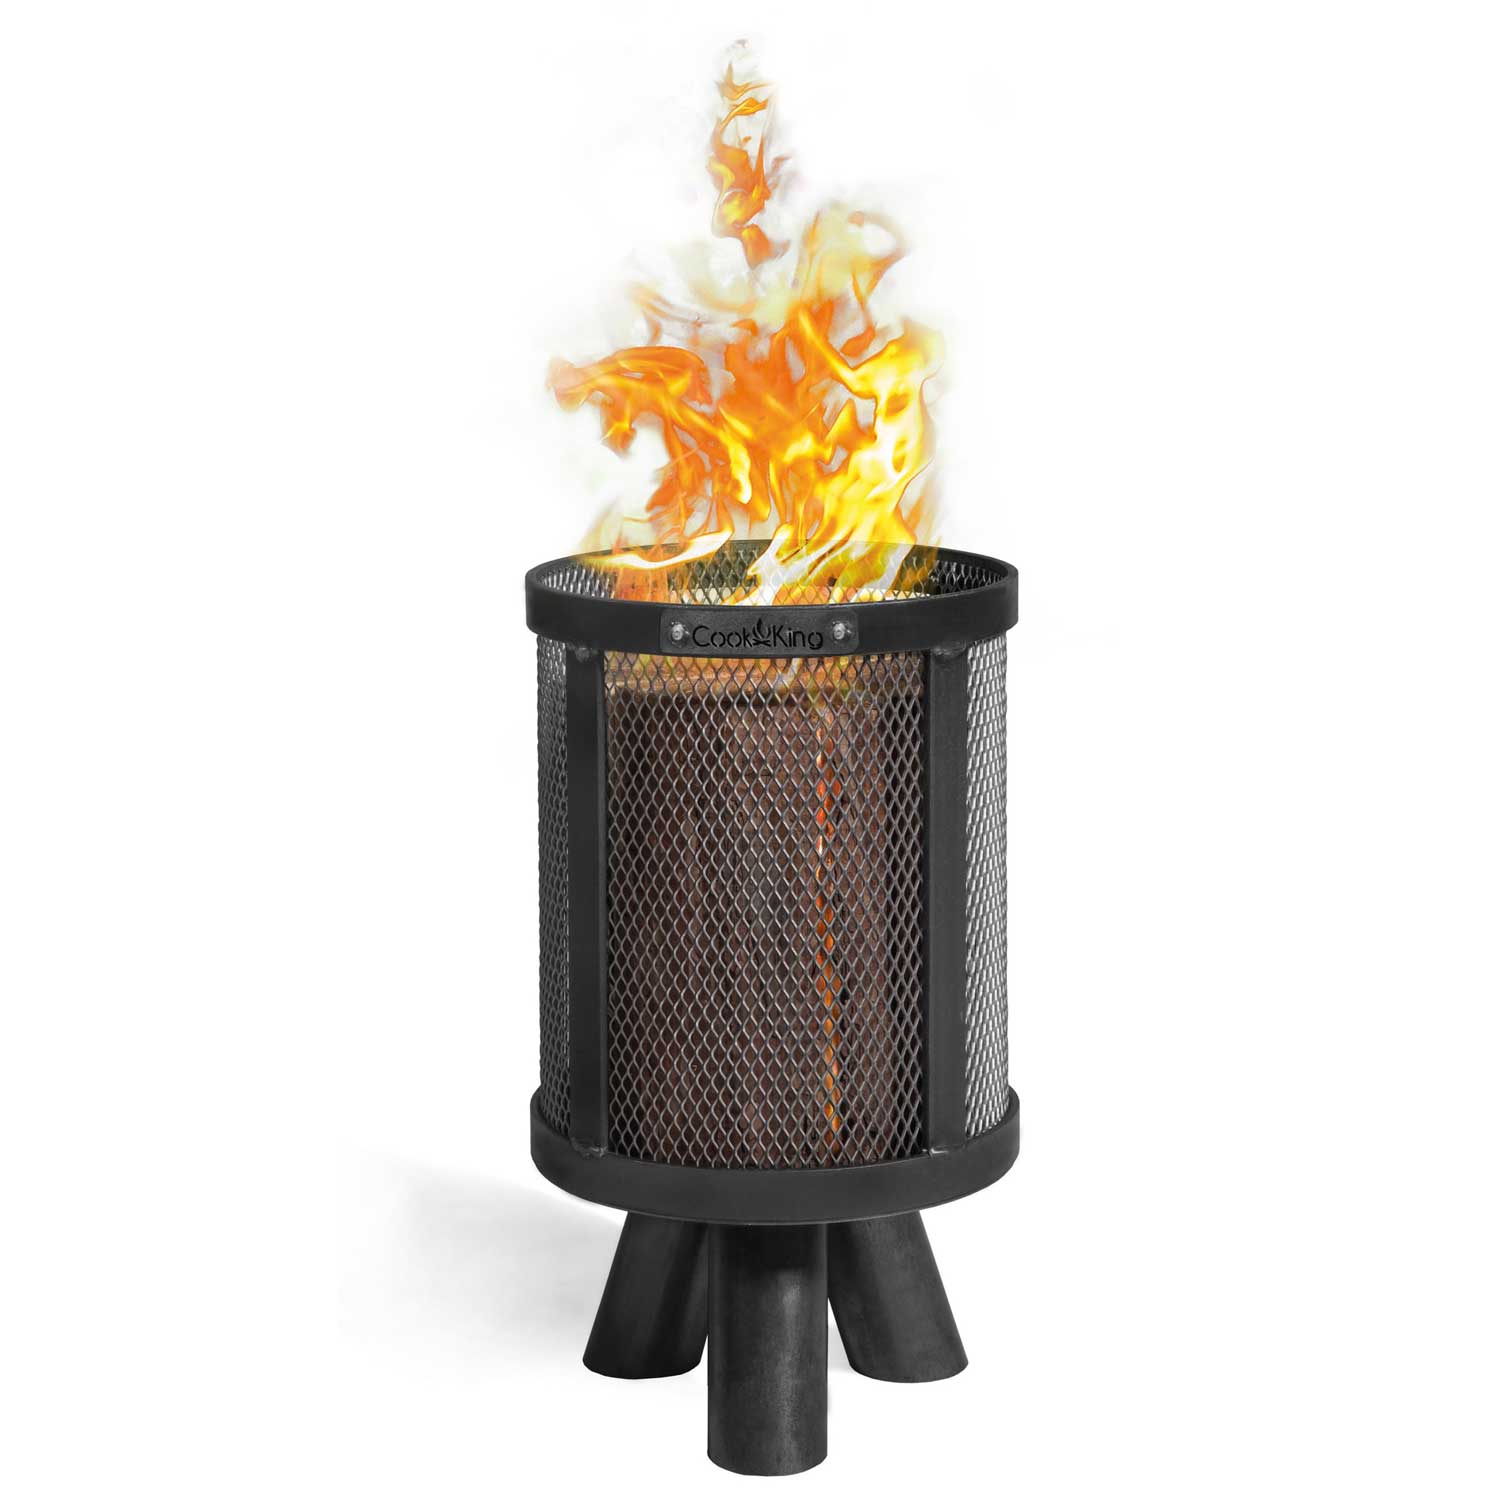 Feuerkorb für Schwedenfeuer „PEDRO“, Feuerkörbe, Terrassenofen, Grill-Feuerkorb, Feuerschale, Handgemachte Qualität